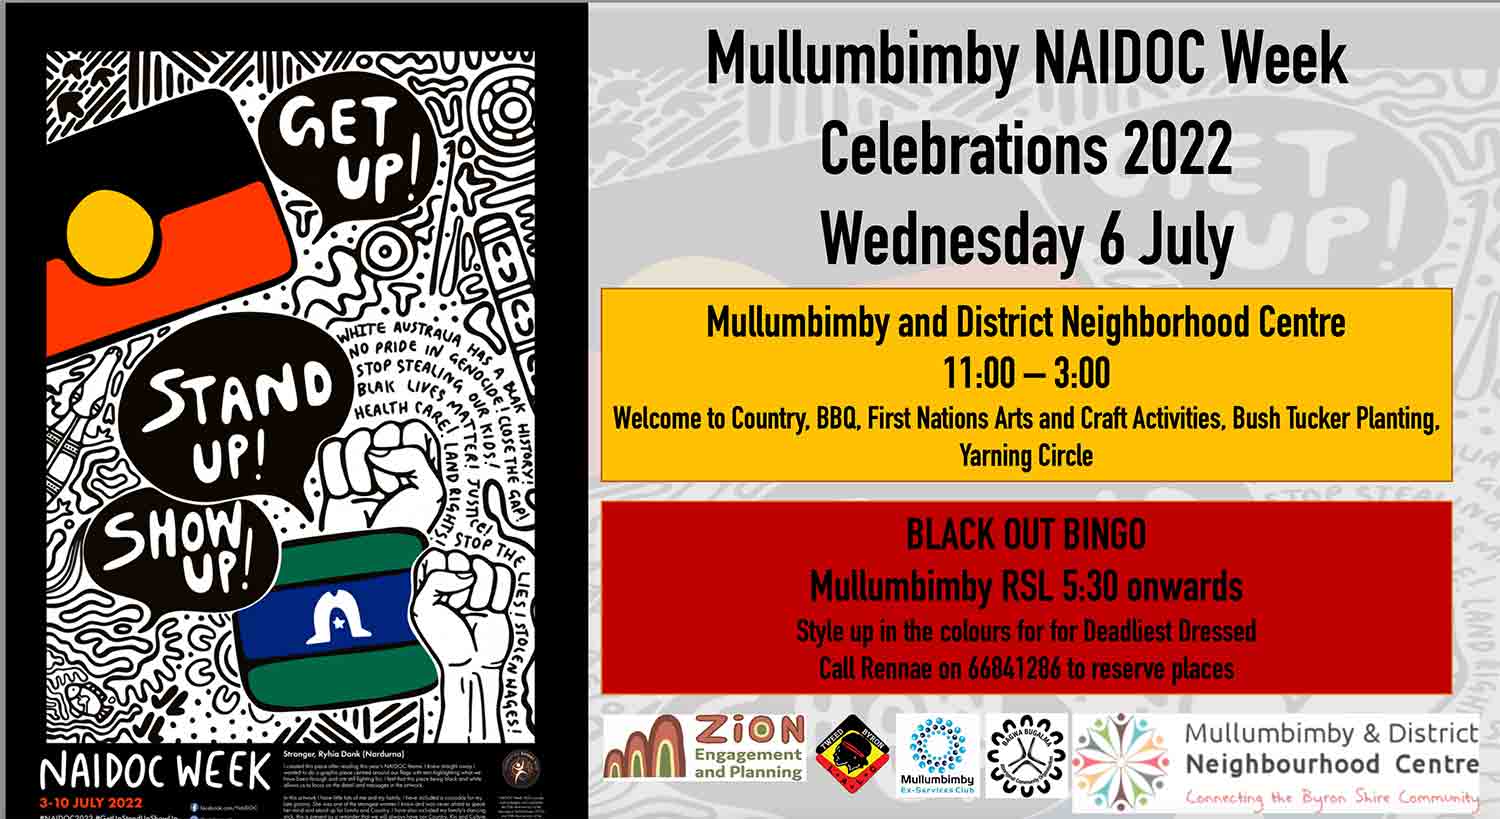 Naidoc Week 2022 Mullumbimby District Neighbourhood Center